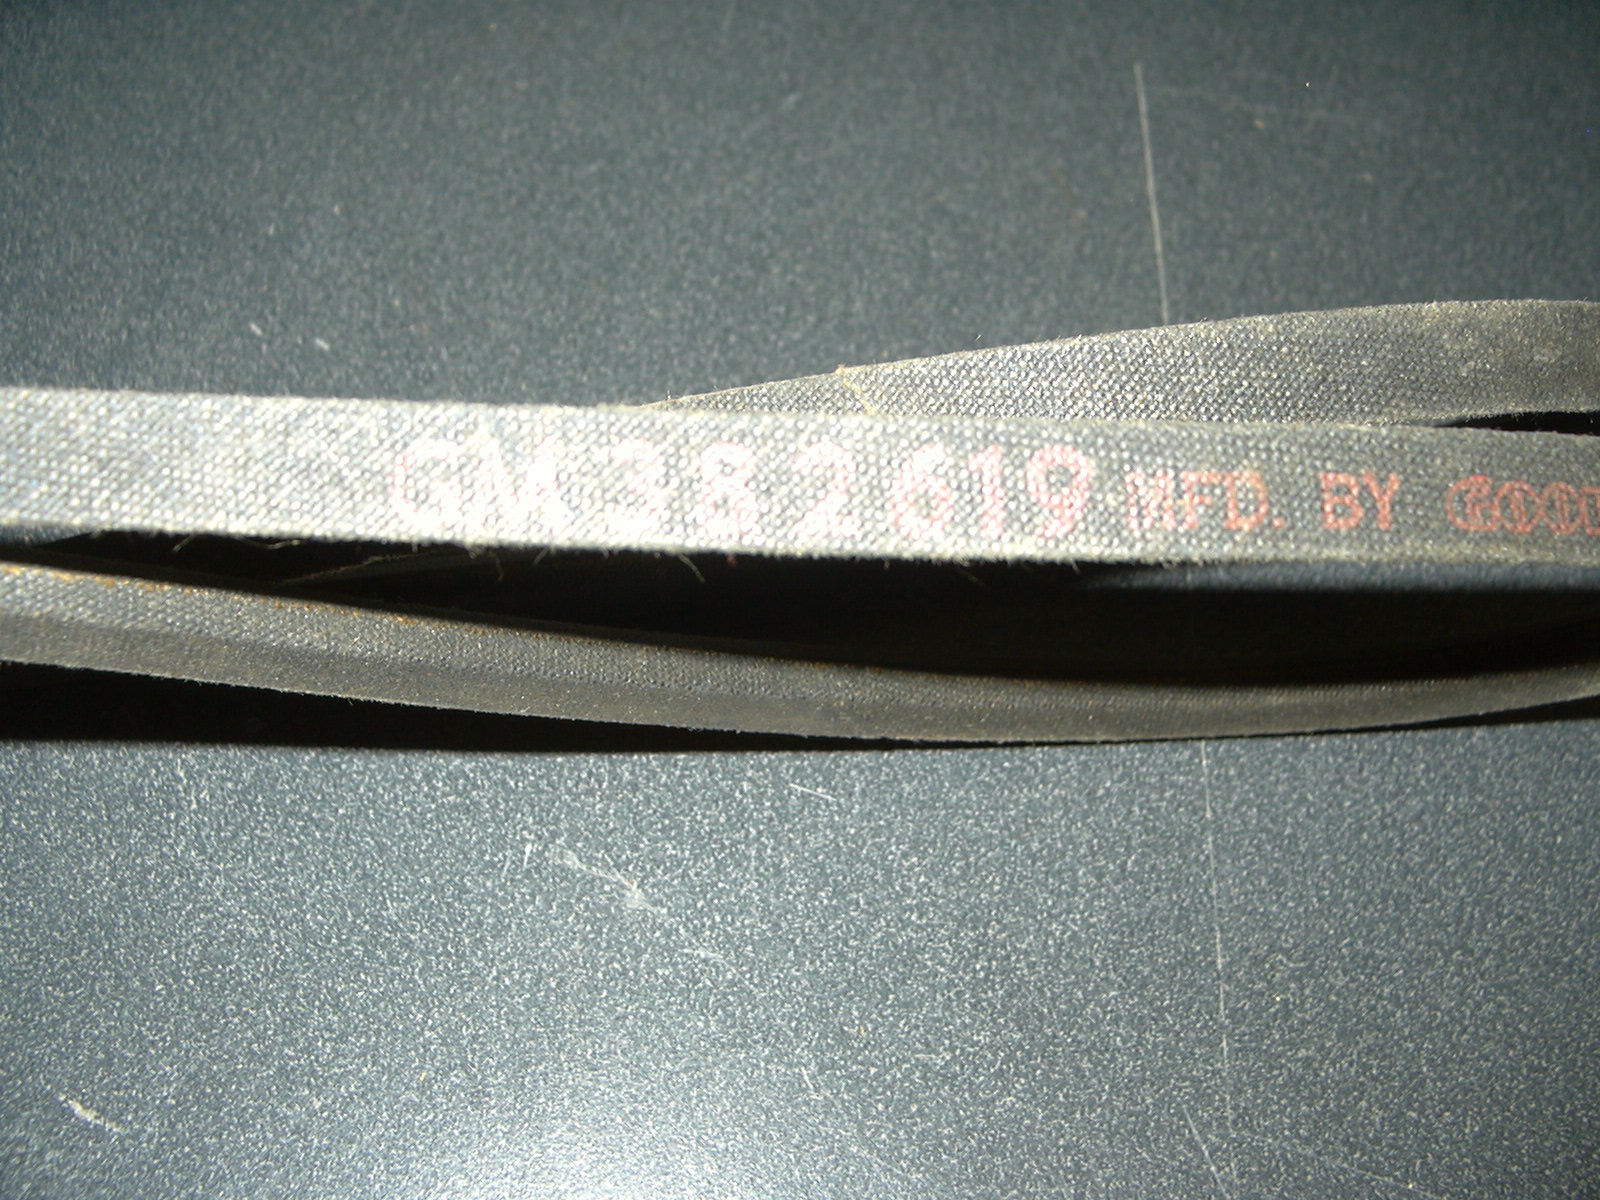 1964 Oldsmobile J88 Power Steering Pump Drive Belt NOS # 382619 Part Number